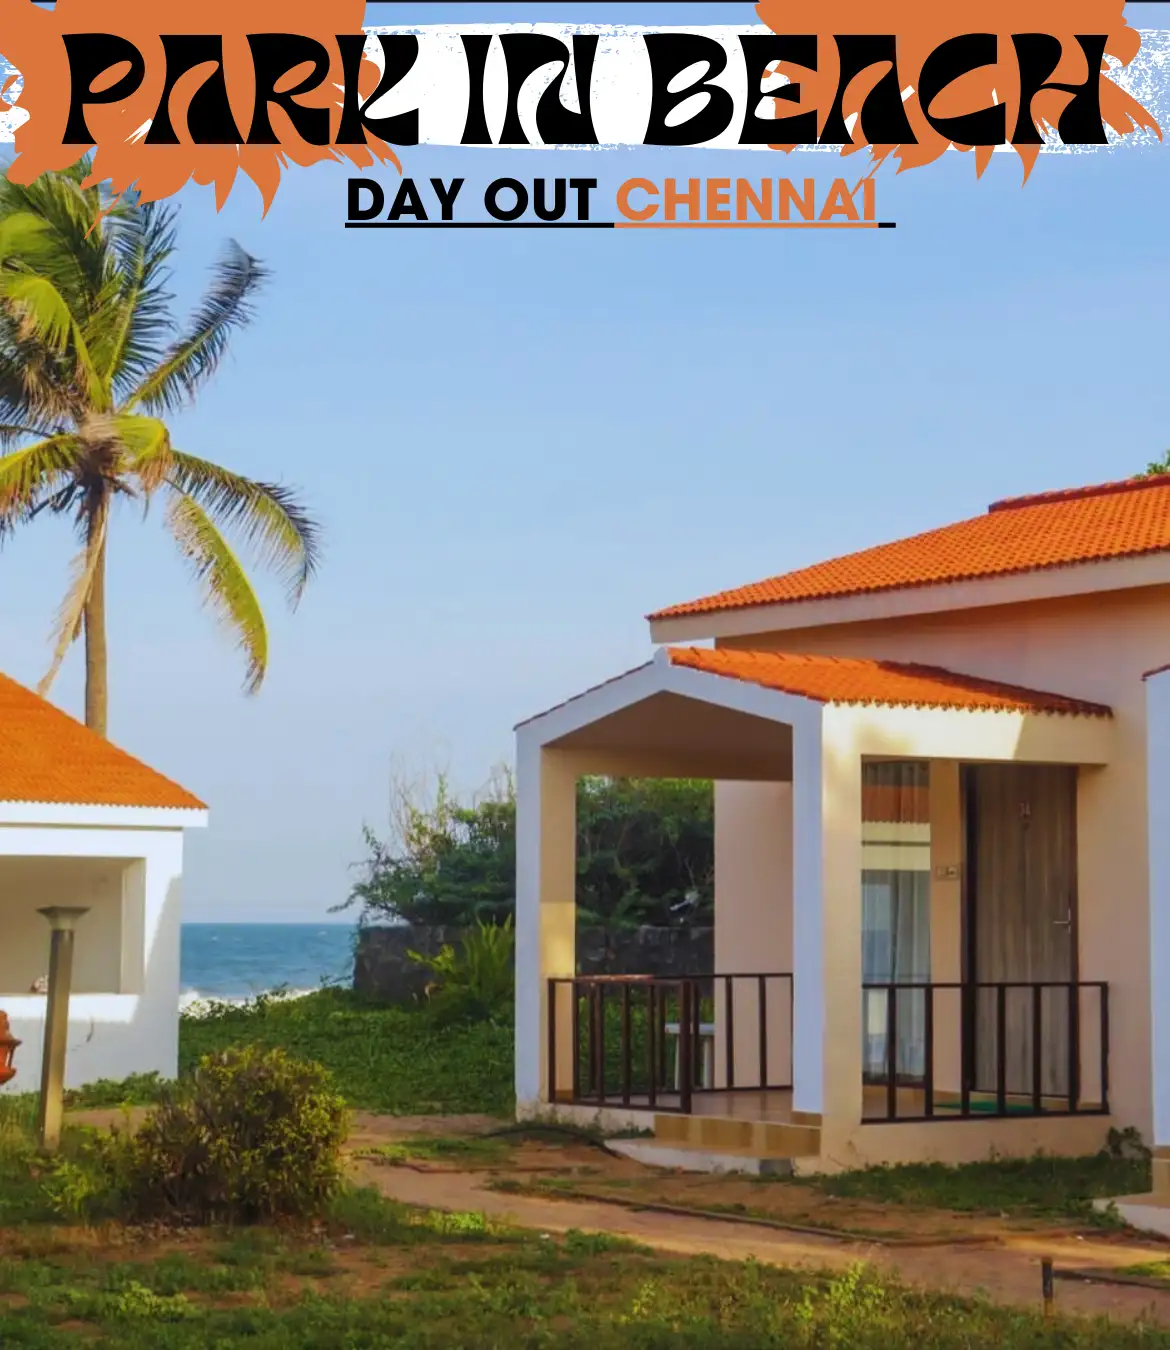 Park Inn Beach Resort Chennai Day Out